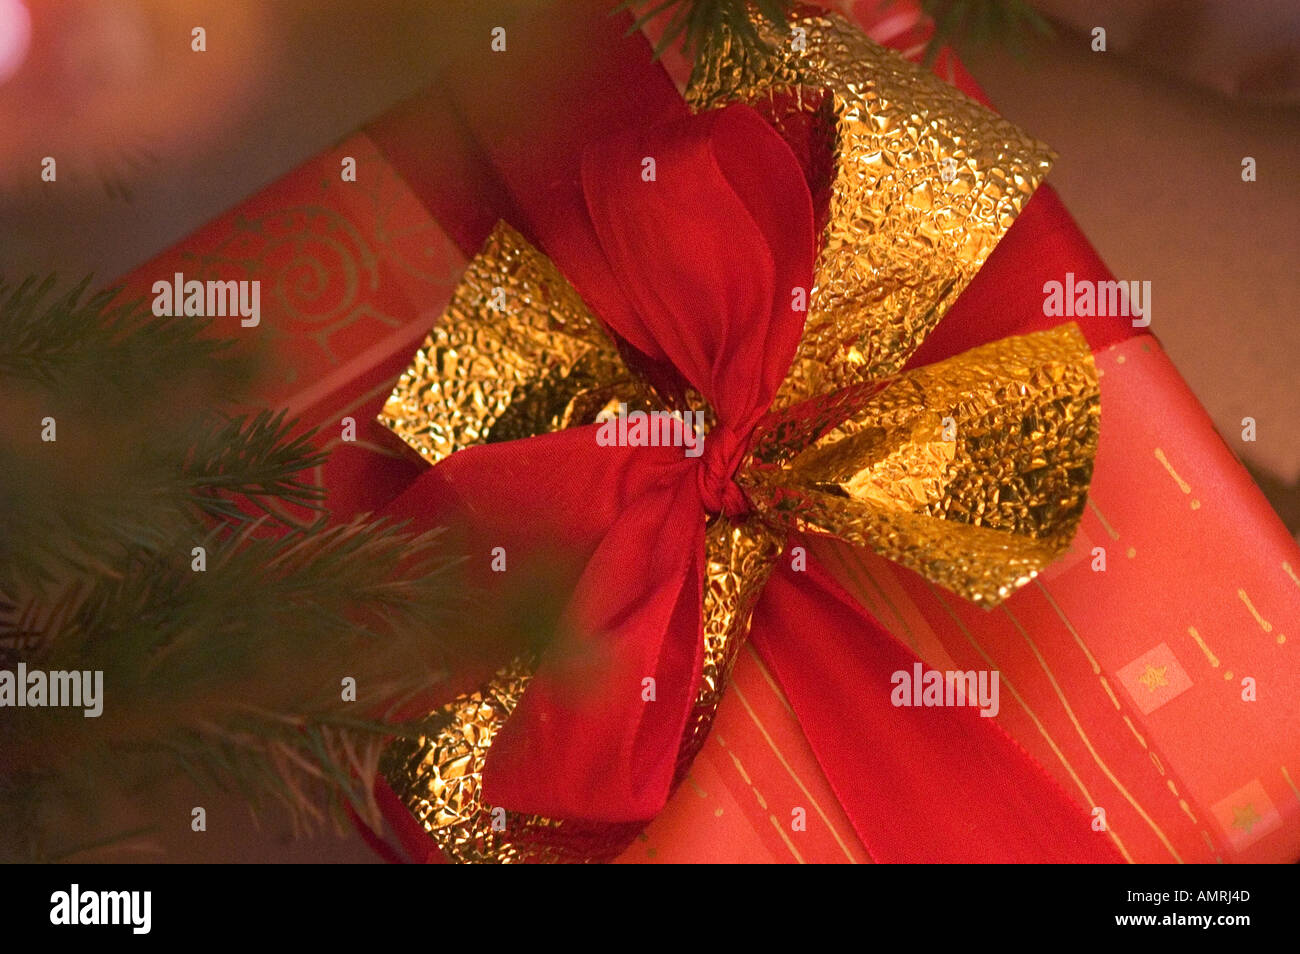 Weihnachten Geschenke unter dem Christbaum chirstmas presents under the Christmastree Stock Photo